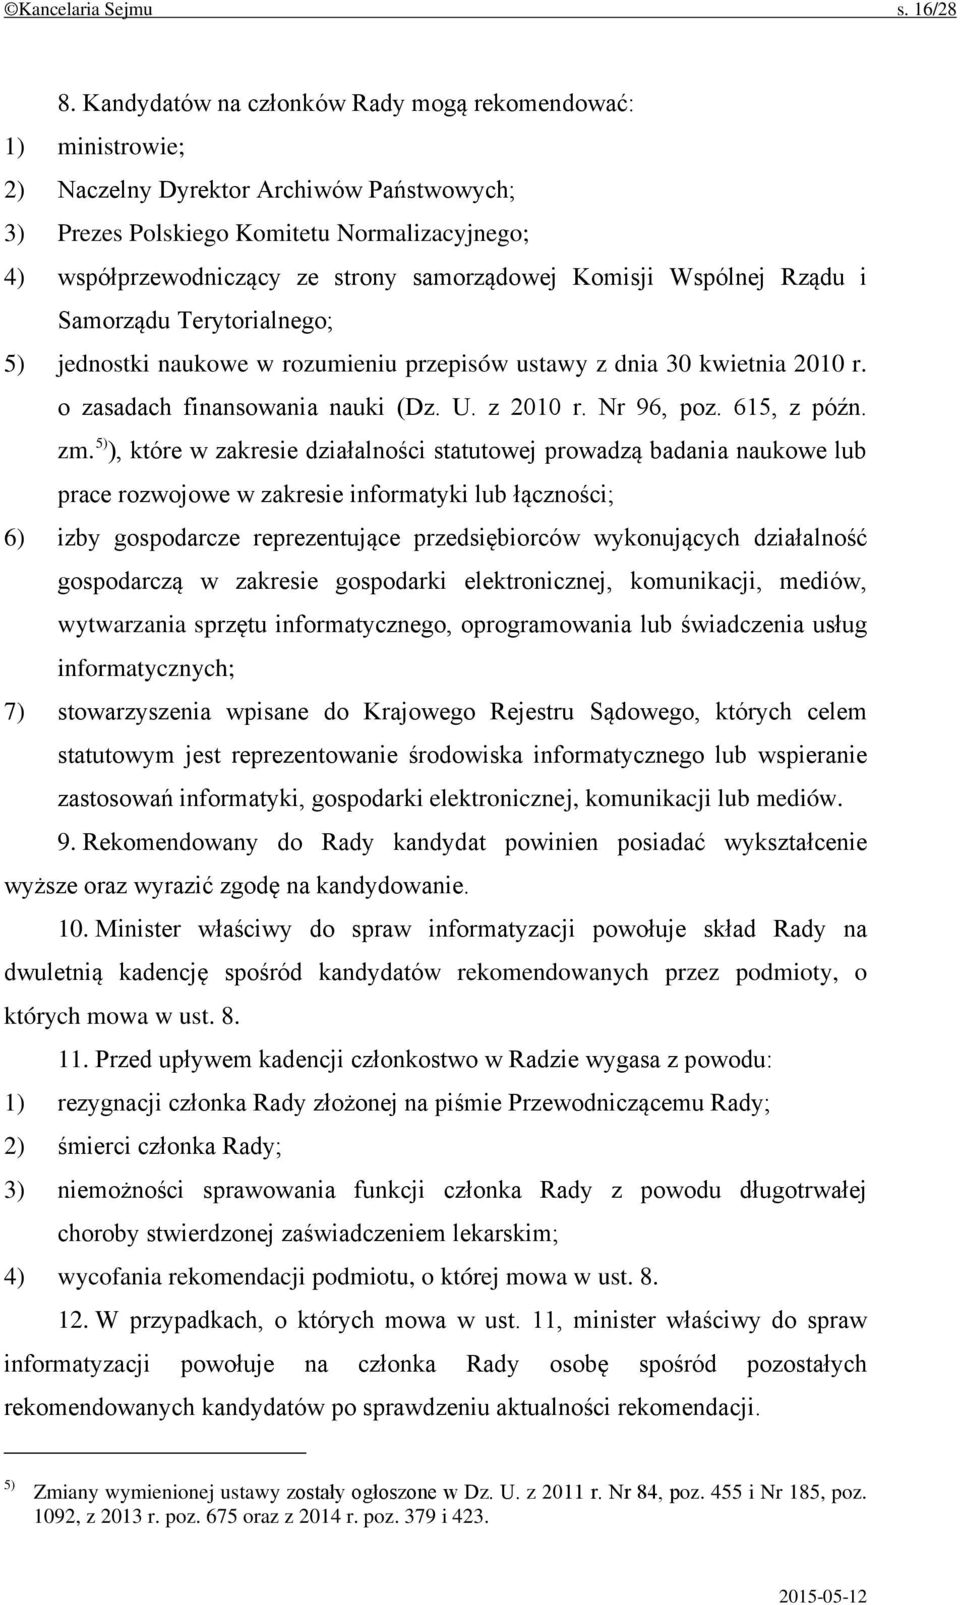 Komisji Wspólnej Rządu i Samorządu Terytorialnego; 5) jednostki naukowe w rozumieniu przepisów ustawy z dnia 30 kwietnia 2010 r. o zasadach finansowania nauki (Dz. U. z 2010 r. Nr 96, poz.